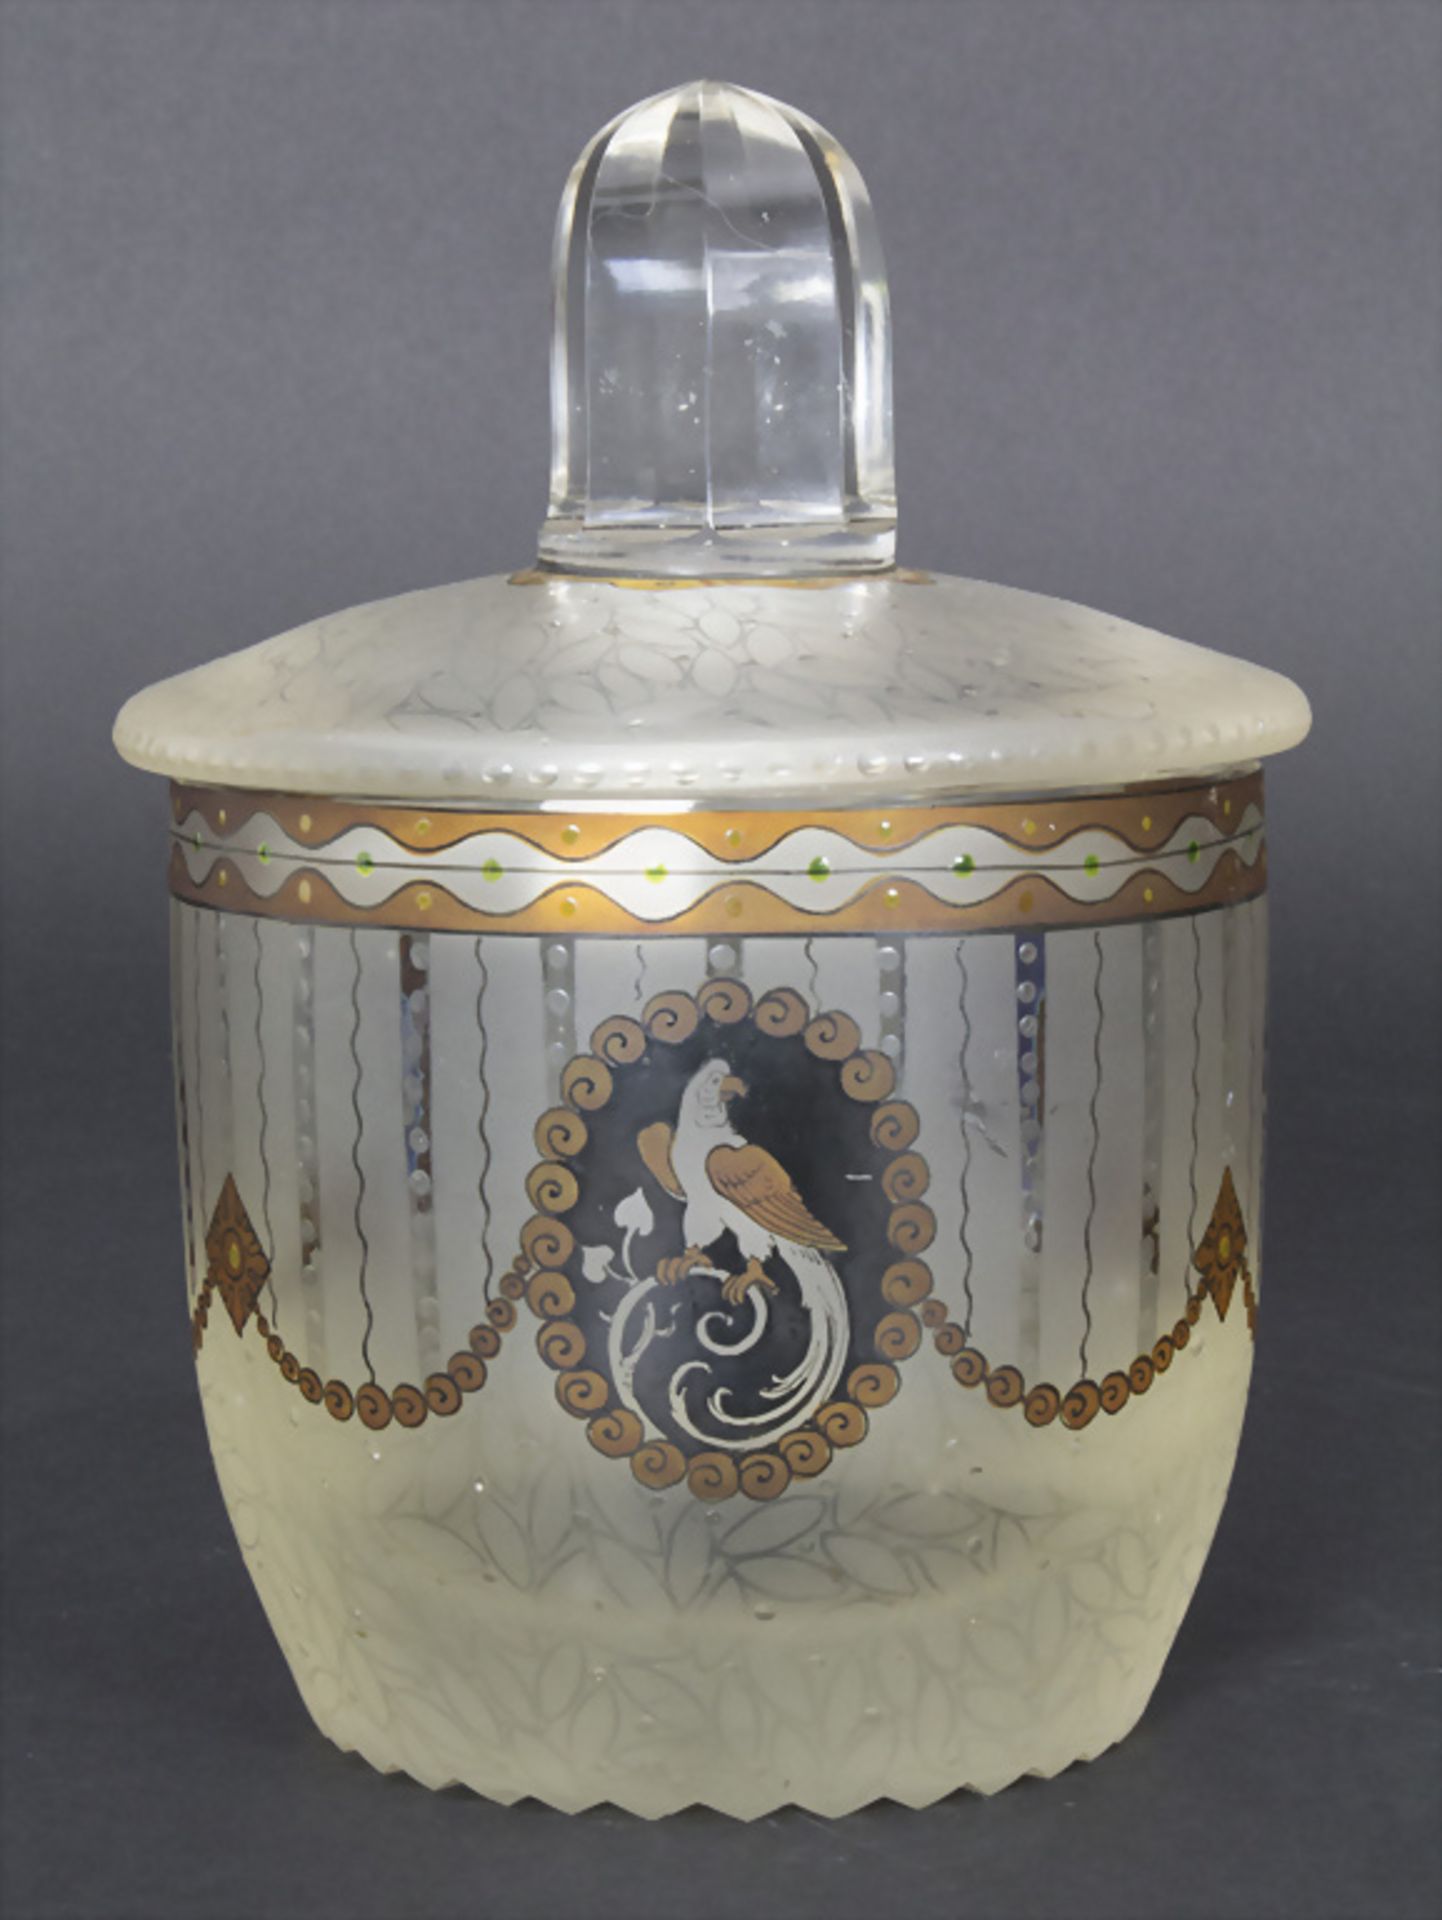 Jugendstil Deckelgefäß mit Transparentemaildekor / An Art Nouveau covered bowl with ... - Image 3 of 5